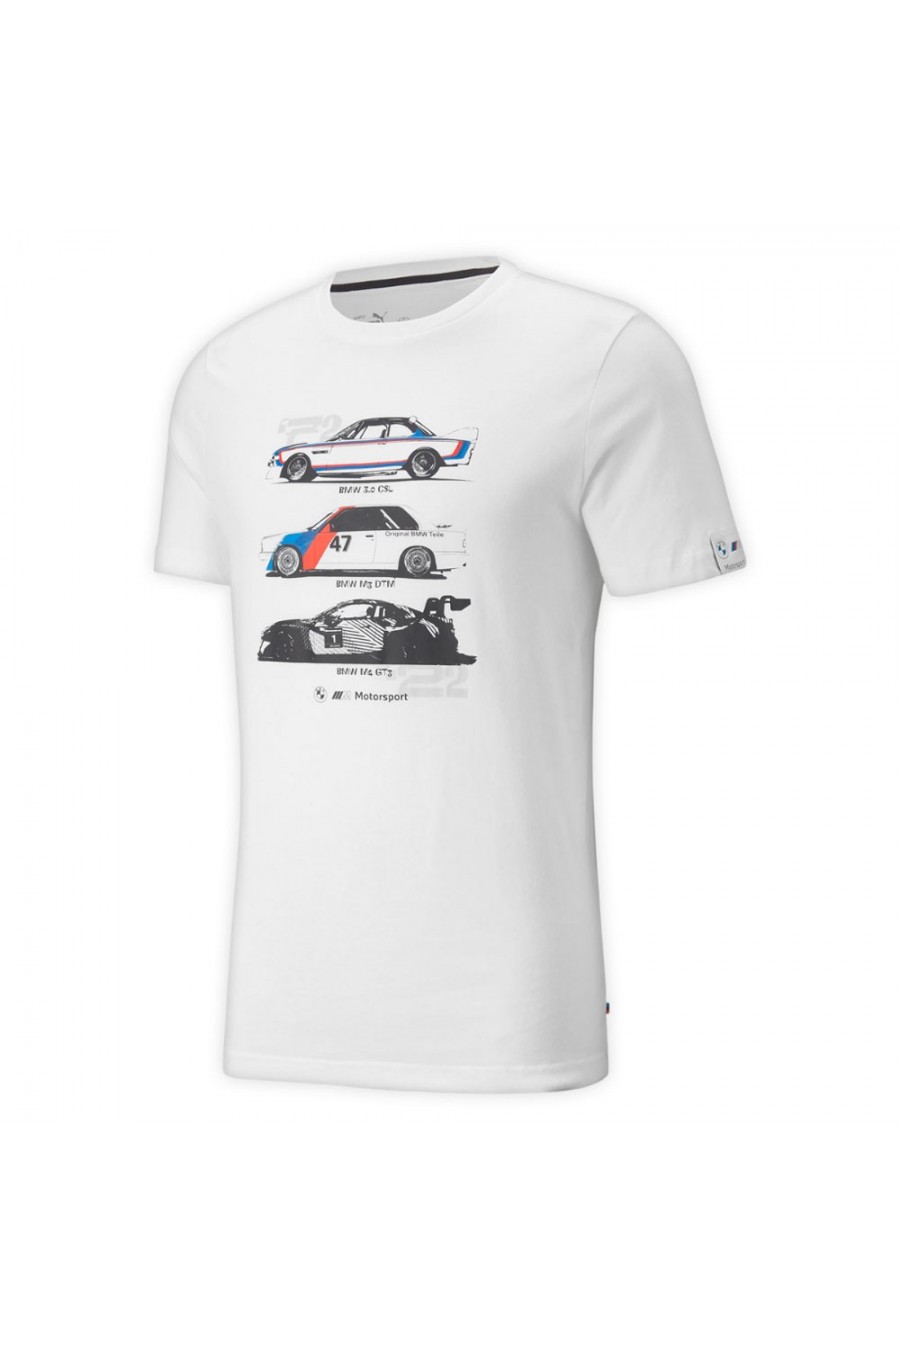 Camiseta BMW logo tallas y colores a elegir. - Vinyl-Arte